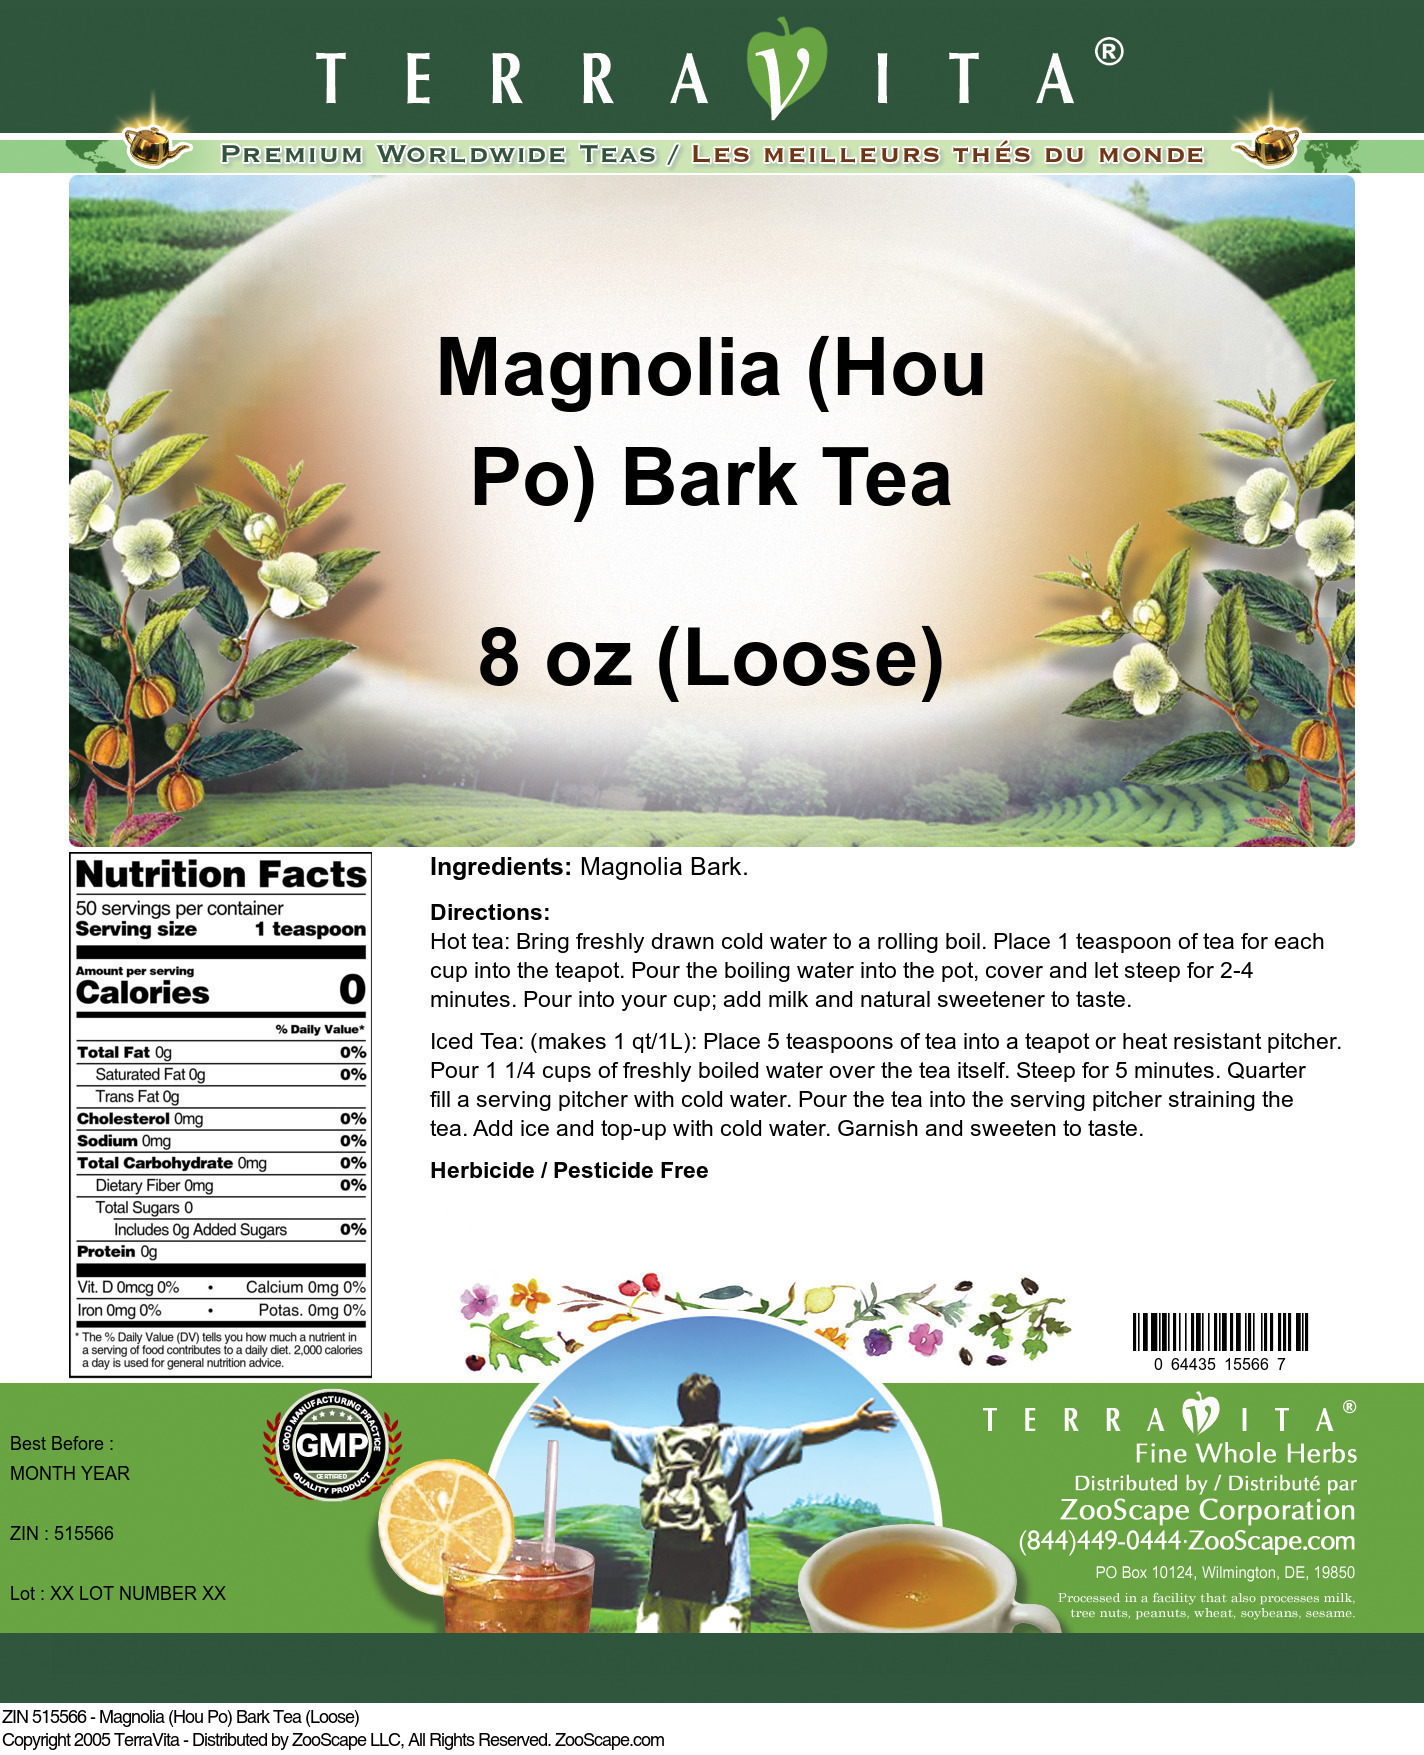 Magnolia (Hou Po) Bark Tea (Loose) - Label